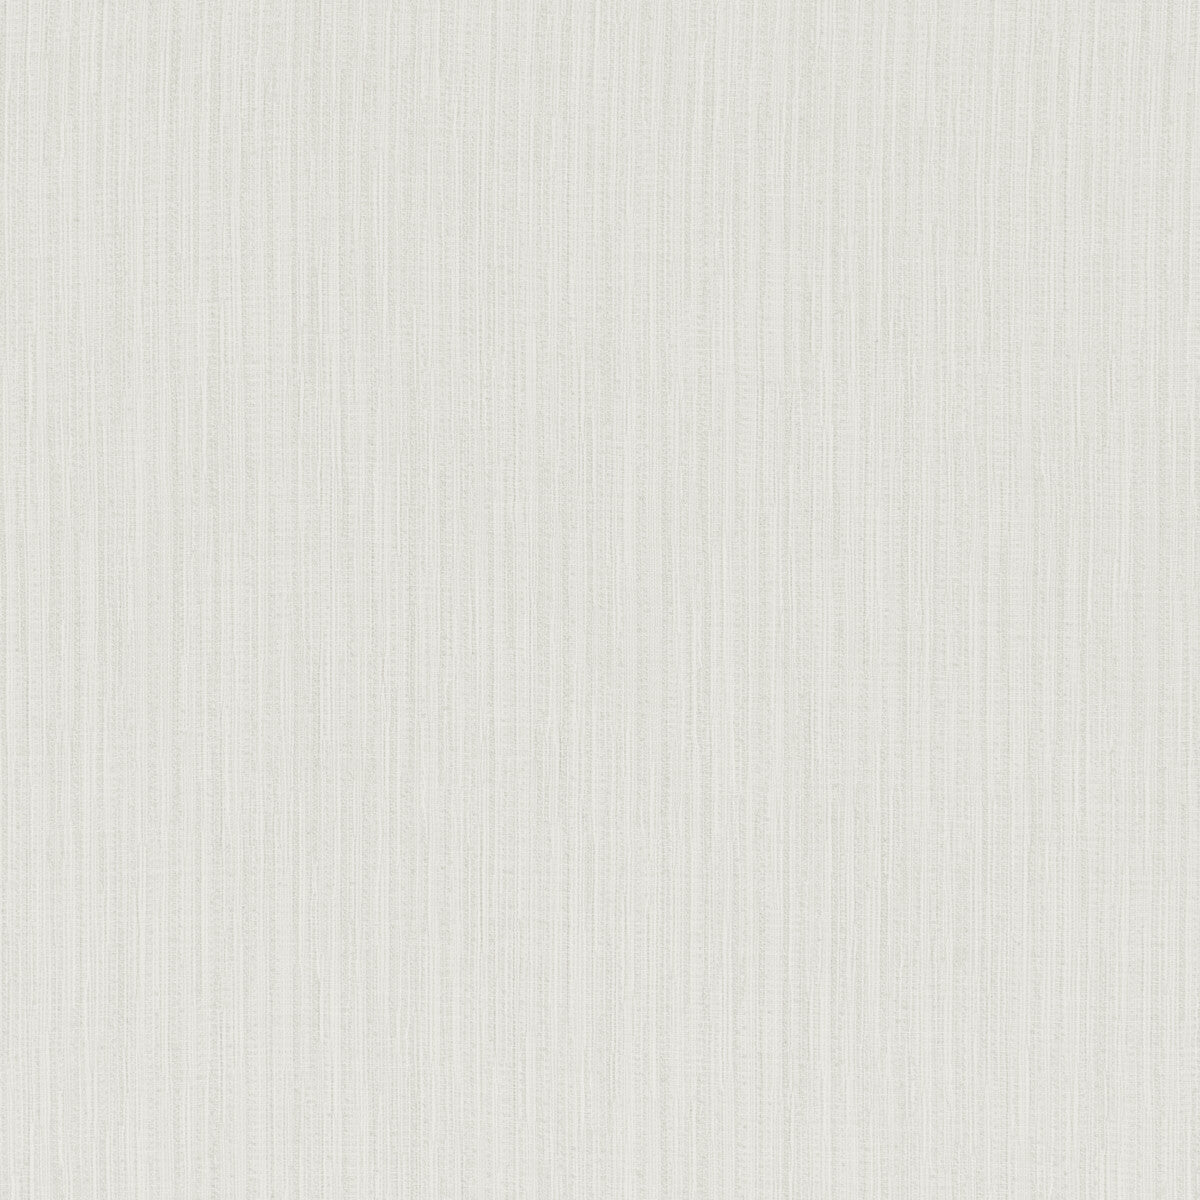 Kravet Basics fabric in 4879-101 color - pattern 4879.101.0 - by Kravet Basics